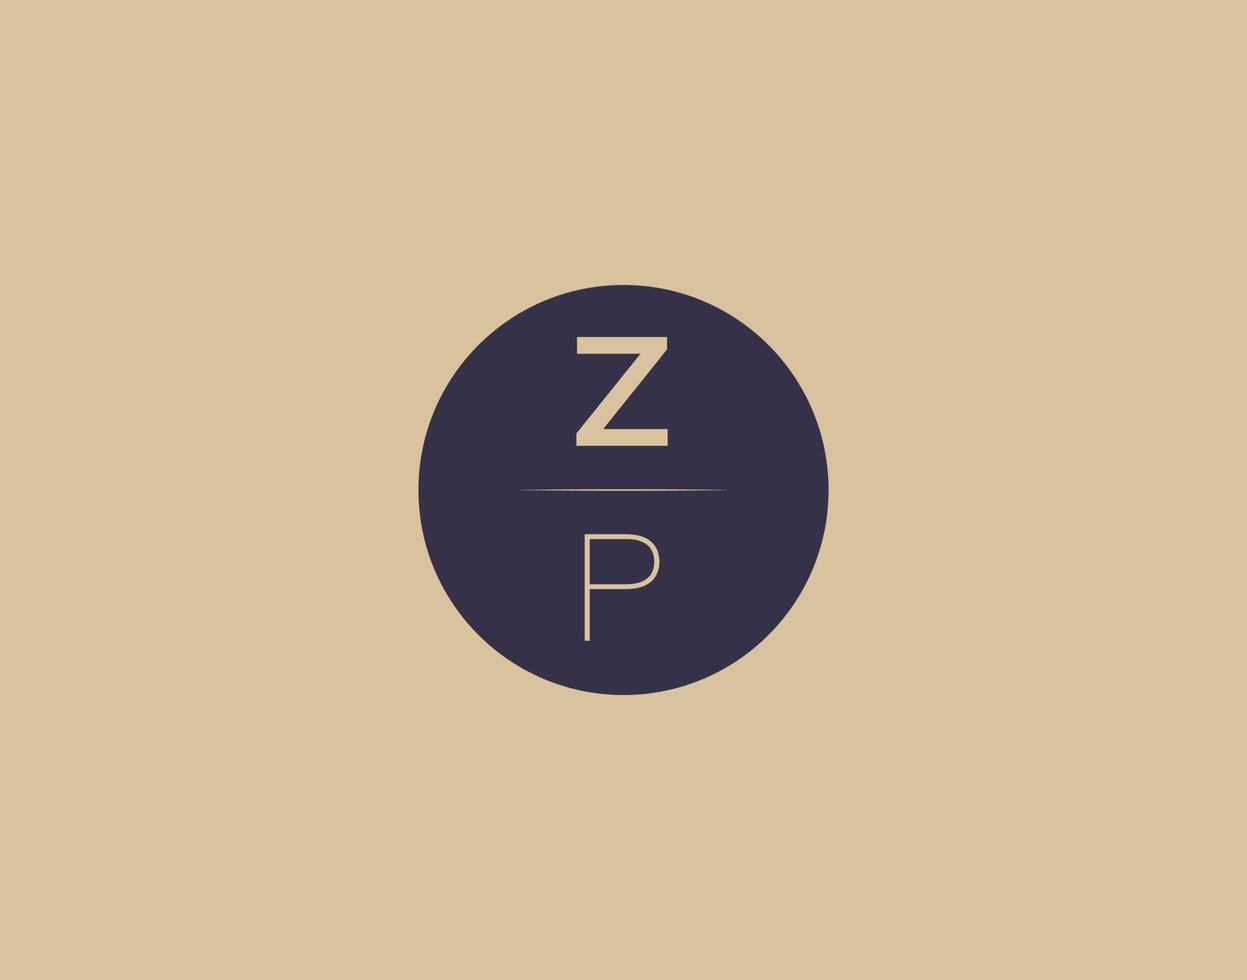 zp Brief moderne elegante Logo-Design-Vektorbilder vektor